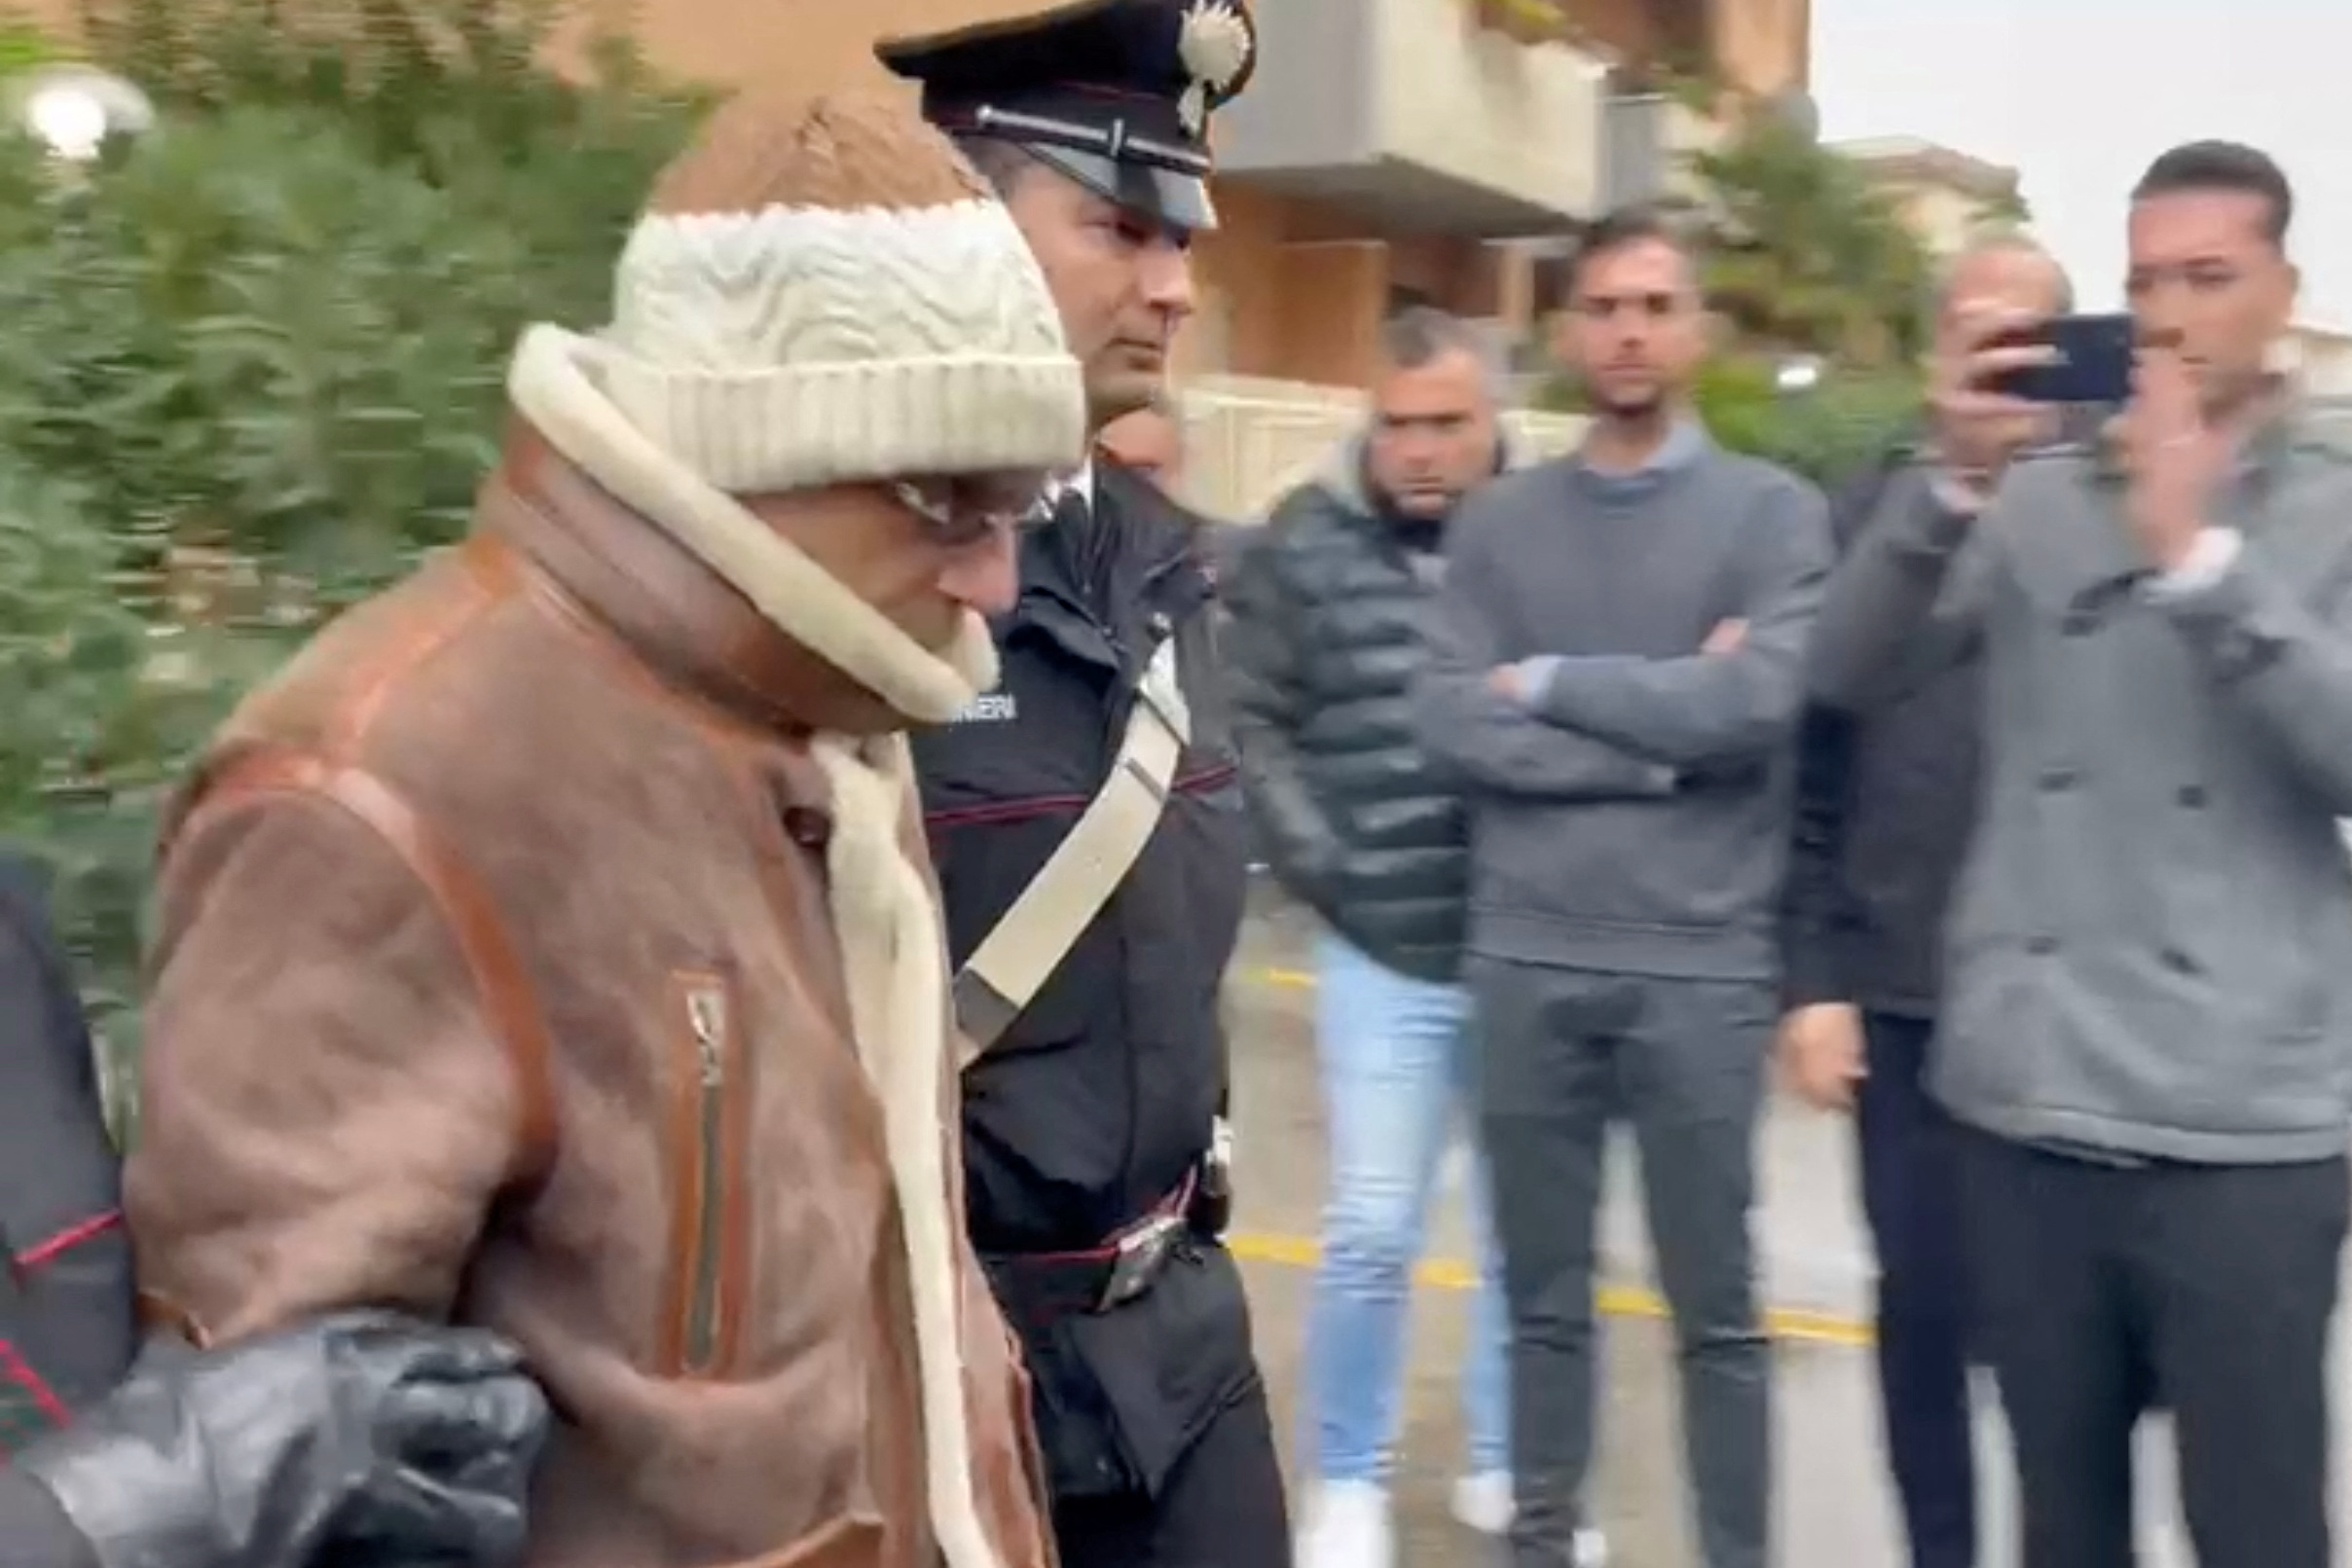 Messina Denaro fue llevado a una ubicación desconocida tras su captura (Carabinieri via REUTERS)